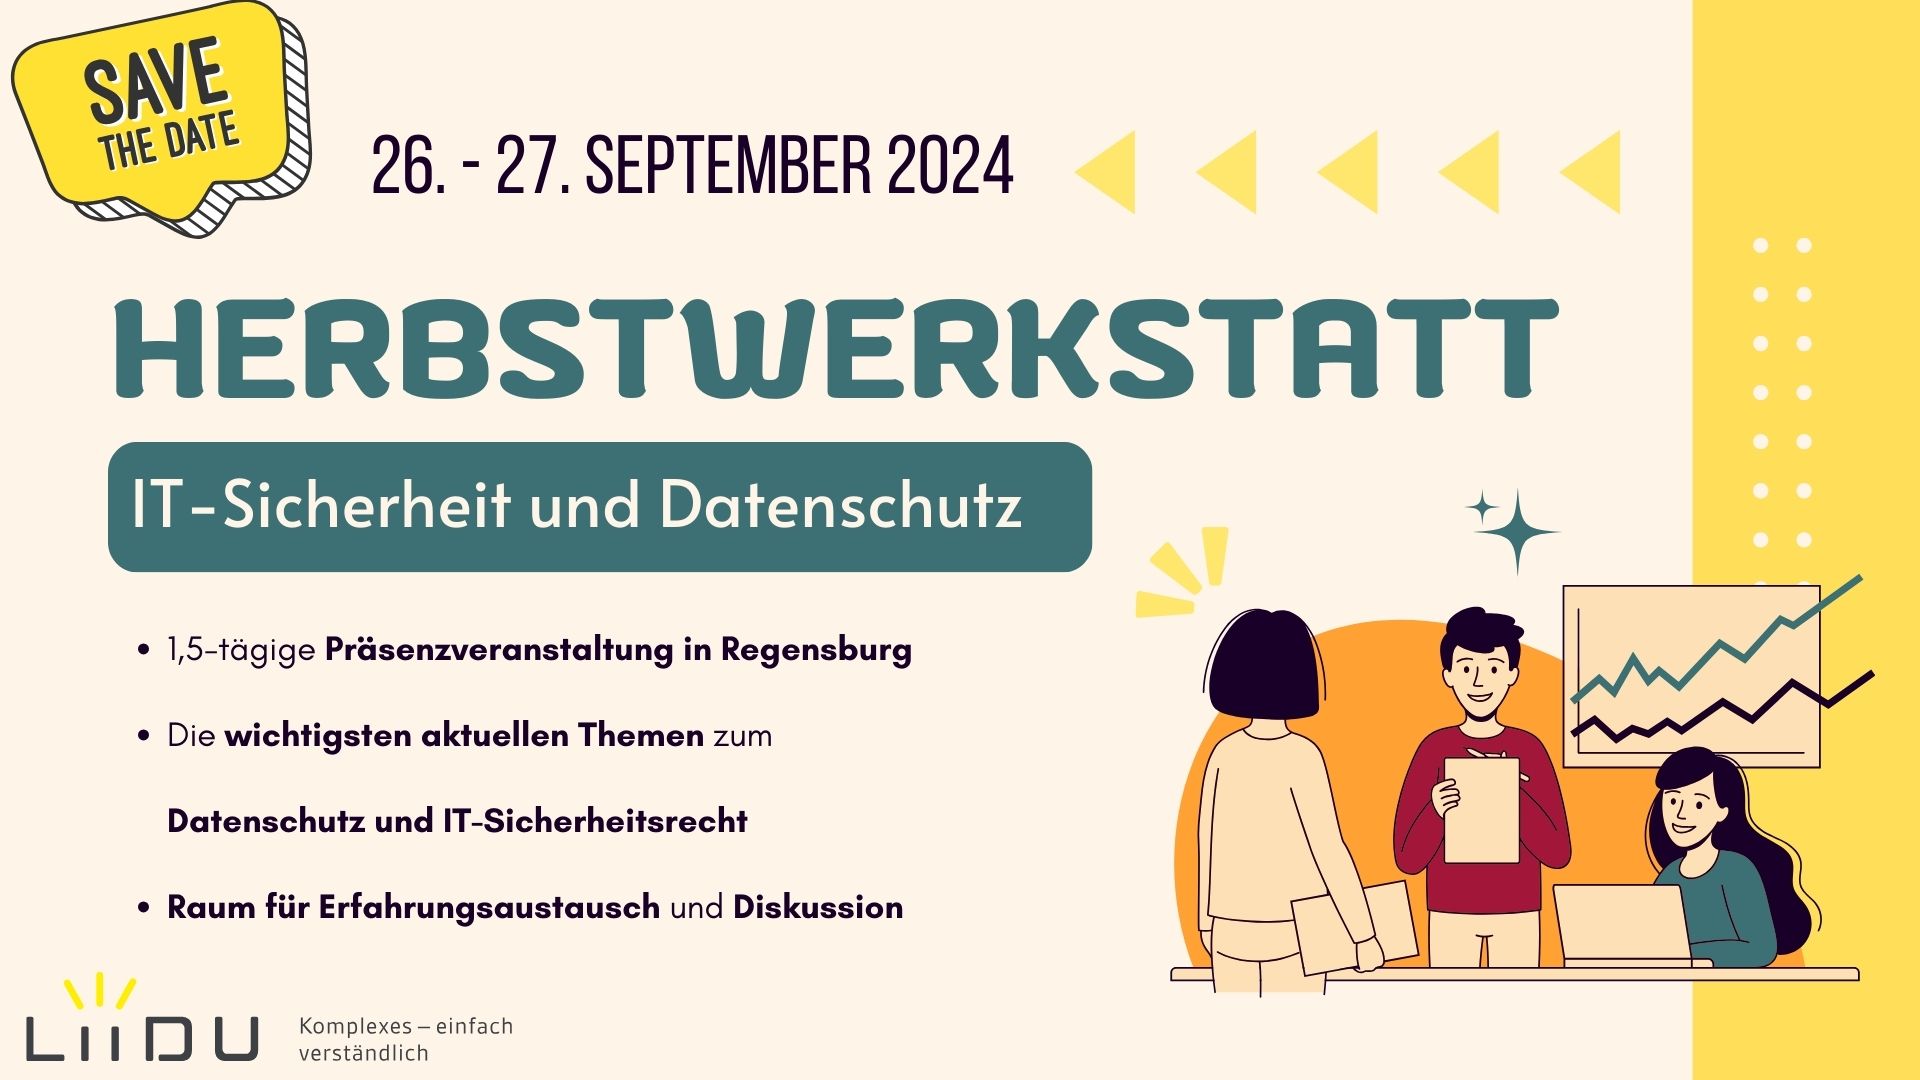 Herbstwerkstatt zu Datenschutz und IT-Sicherheit vom 26.-27. September 2024 in Regensburg.